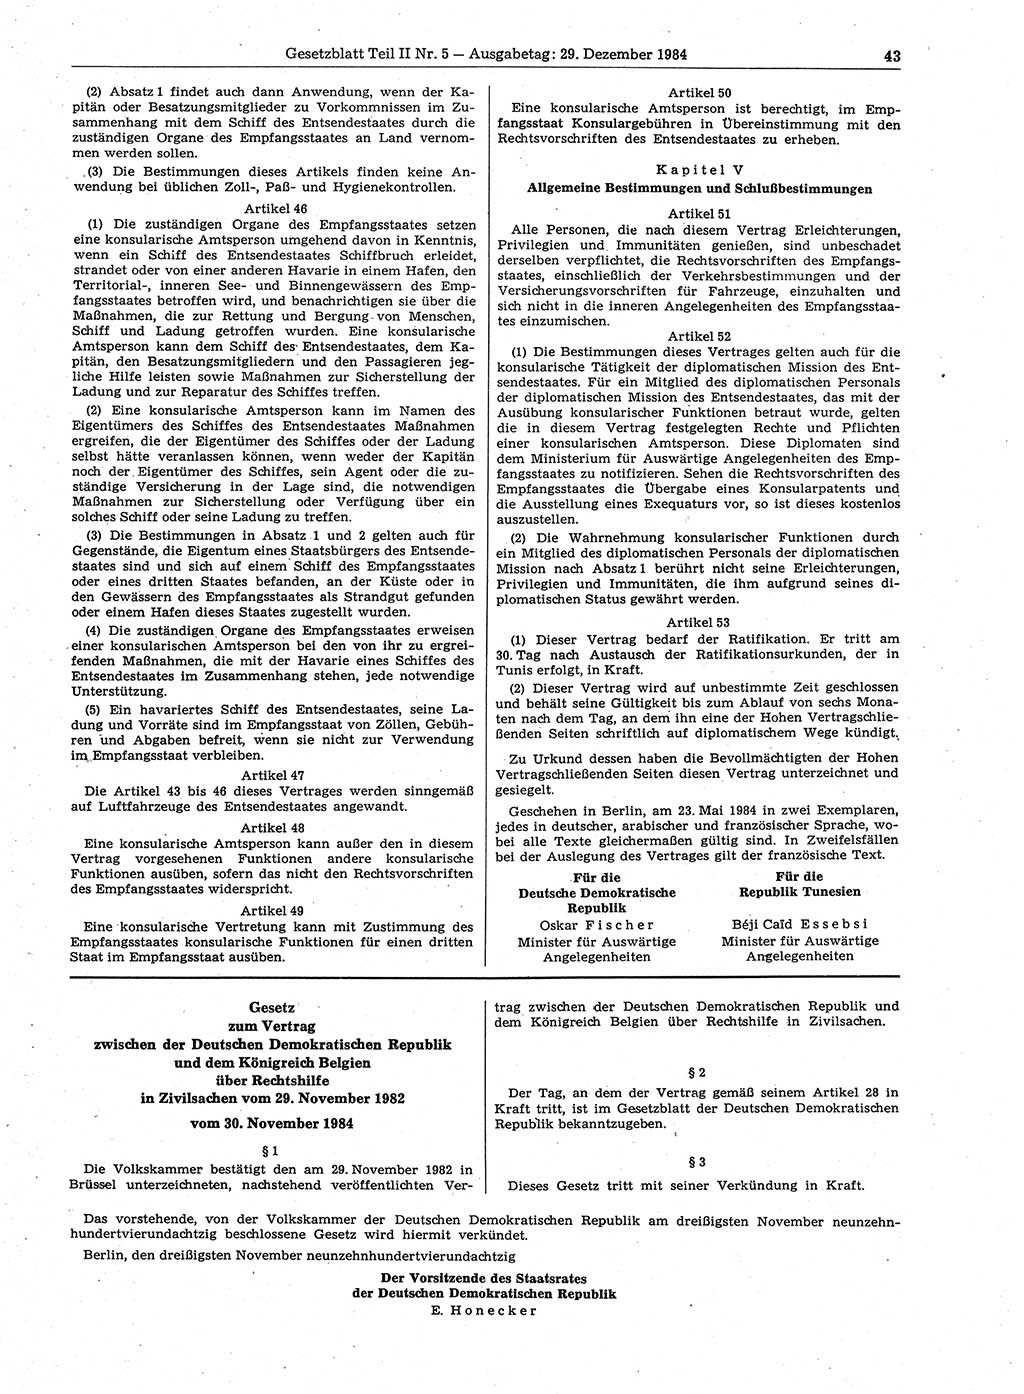 Gesetzblatt (GBl.) der Deutschen Demokratischen Republik (DDR) Teil ⅠⅠ 1984, Seite 43 (GBl. DDR ⅠⅠ 1984, S. 43)